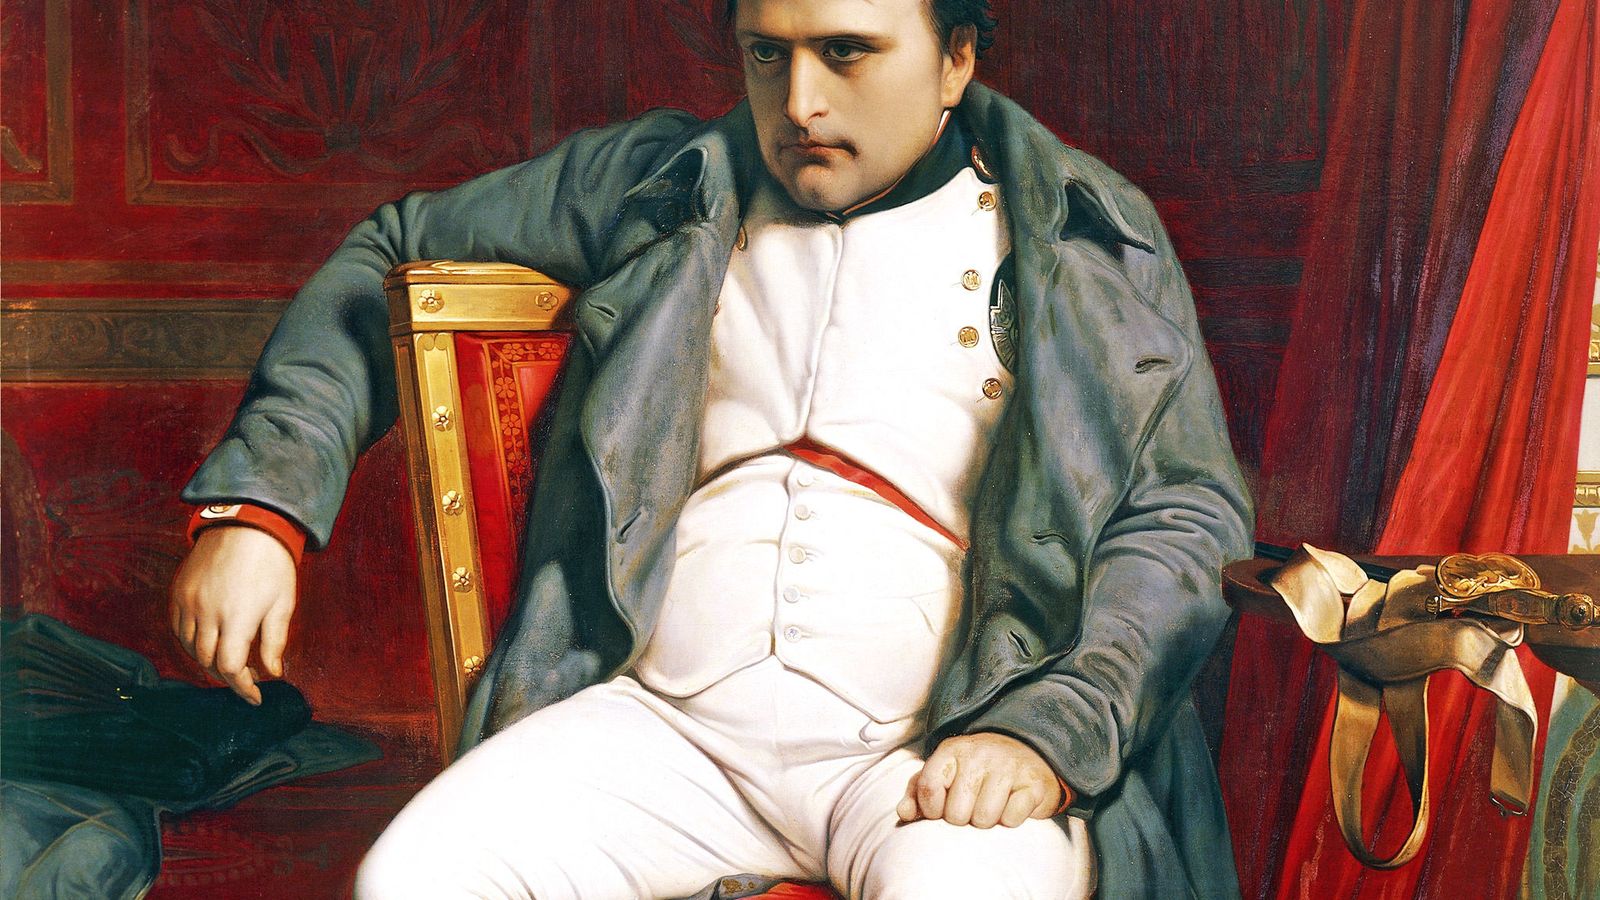 Foto: Los locos se creen Napoleón y tantos cuñados, escritor